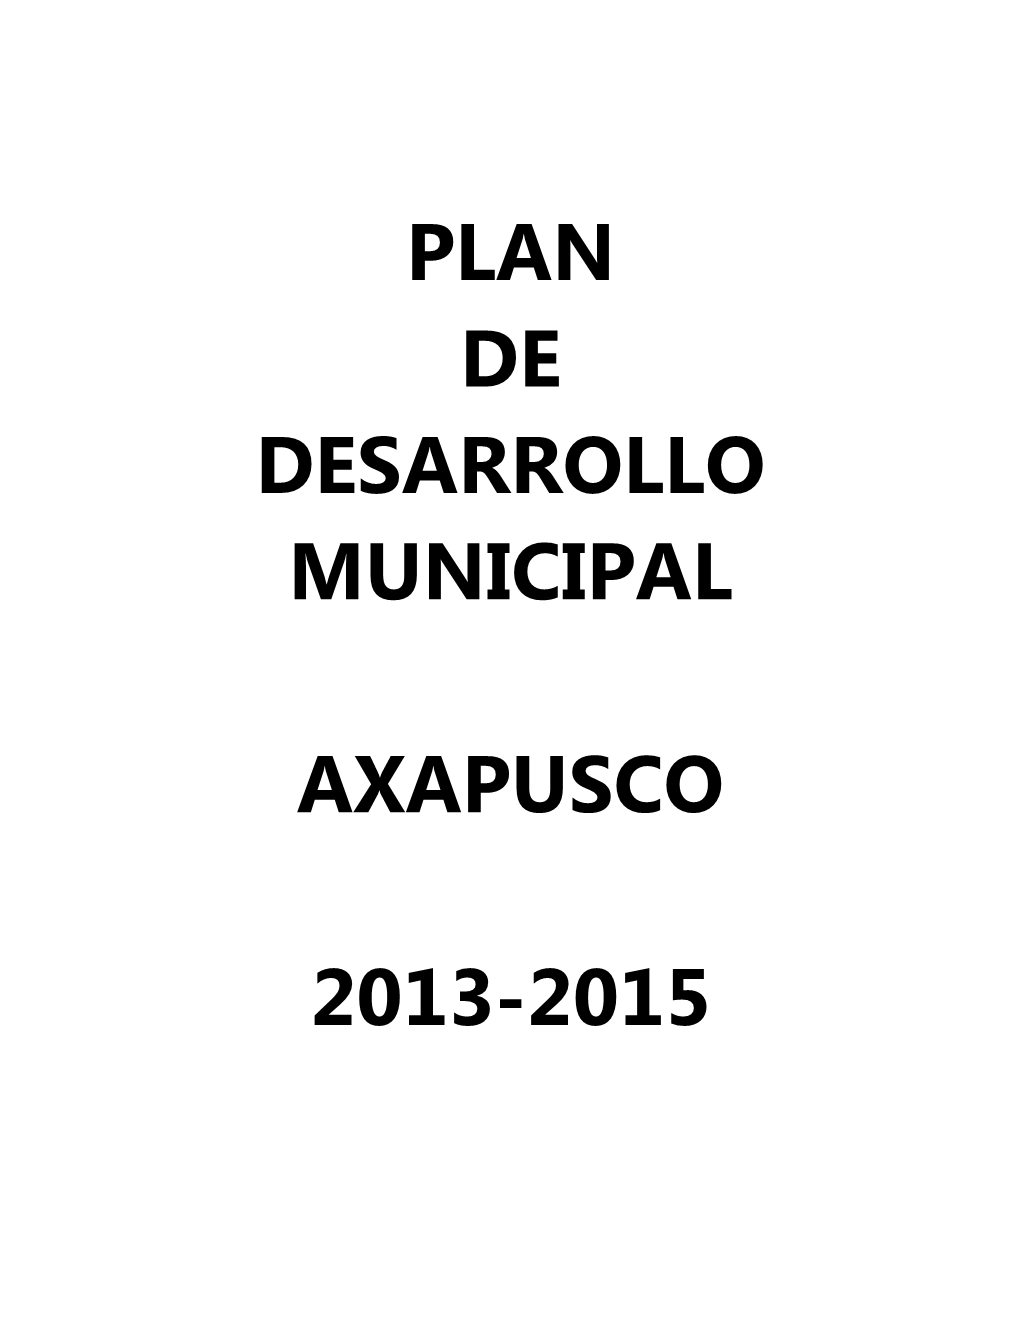 Plan De Desarrollo Municipal Axapusco 2013-2015 Se Llevó a Cabo Por La Dirección De Planeación En Coordinación Con La Unidad De Transparencia